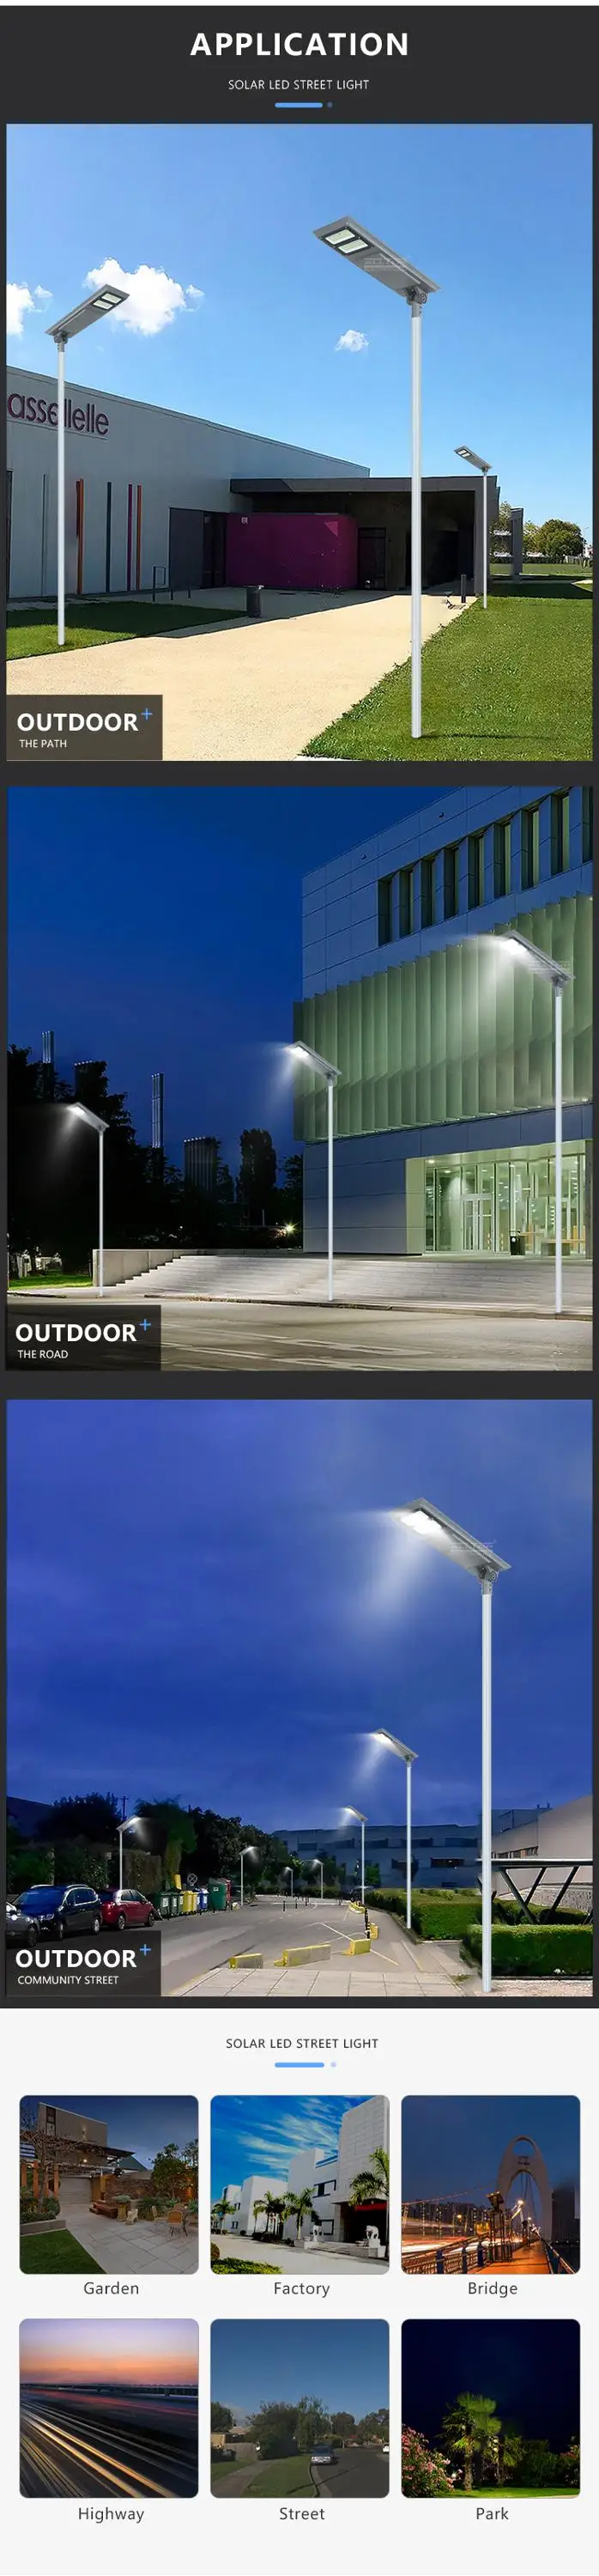 ALLTOP led street light solar system best quality manufacturer-13